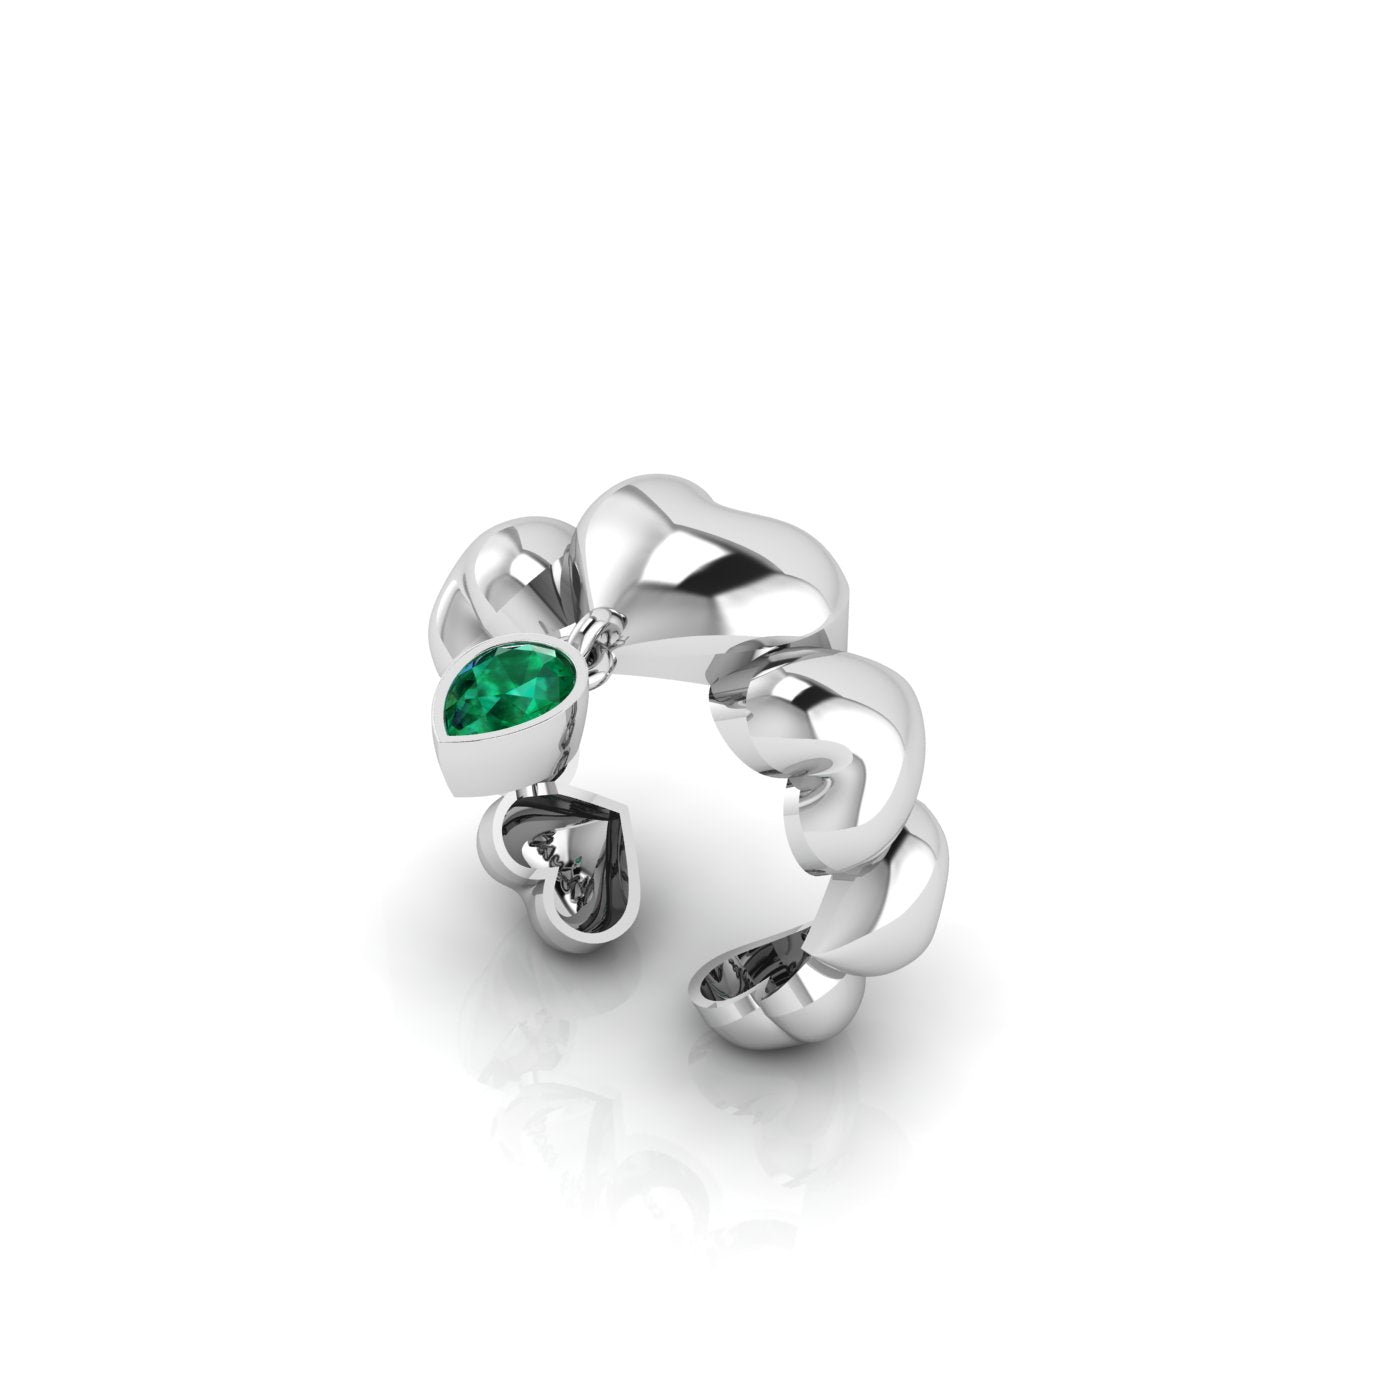 Puff Heart Ring with Natural Green Peridot/Ուռուցիկ սրտերով և բնական պերիդոտ քարով մատանի